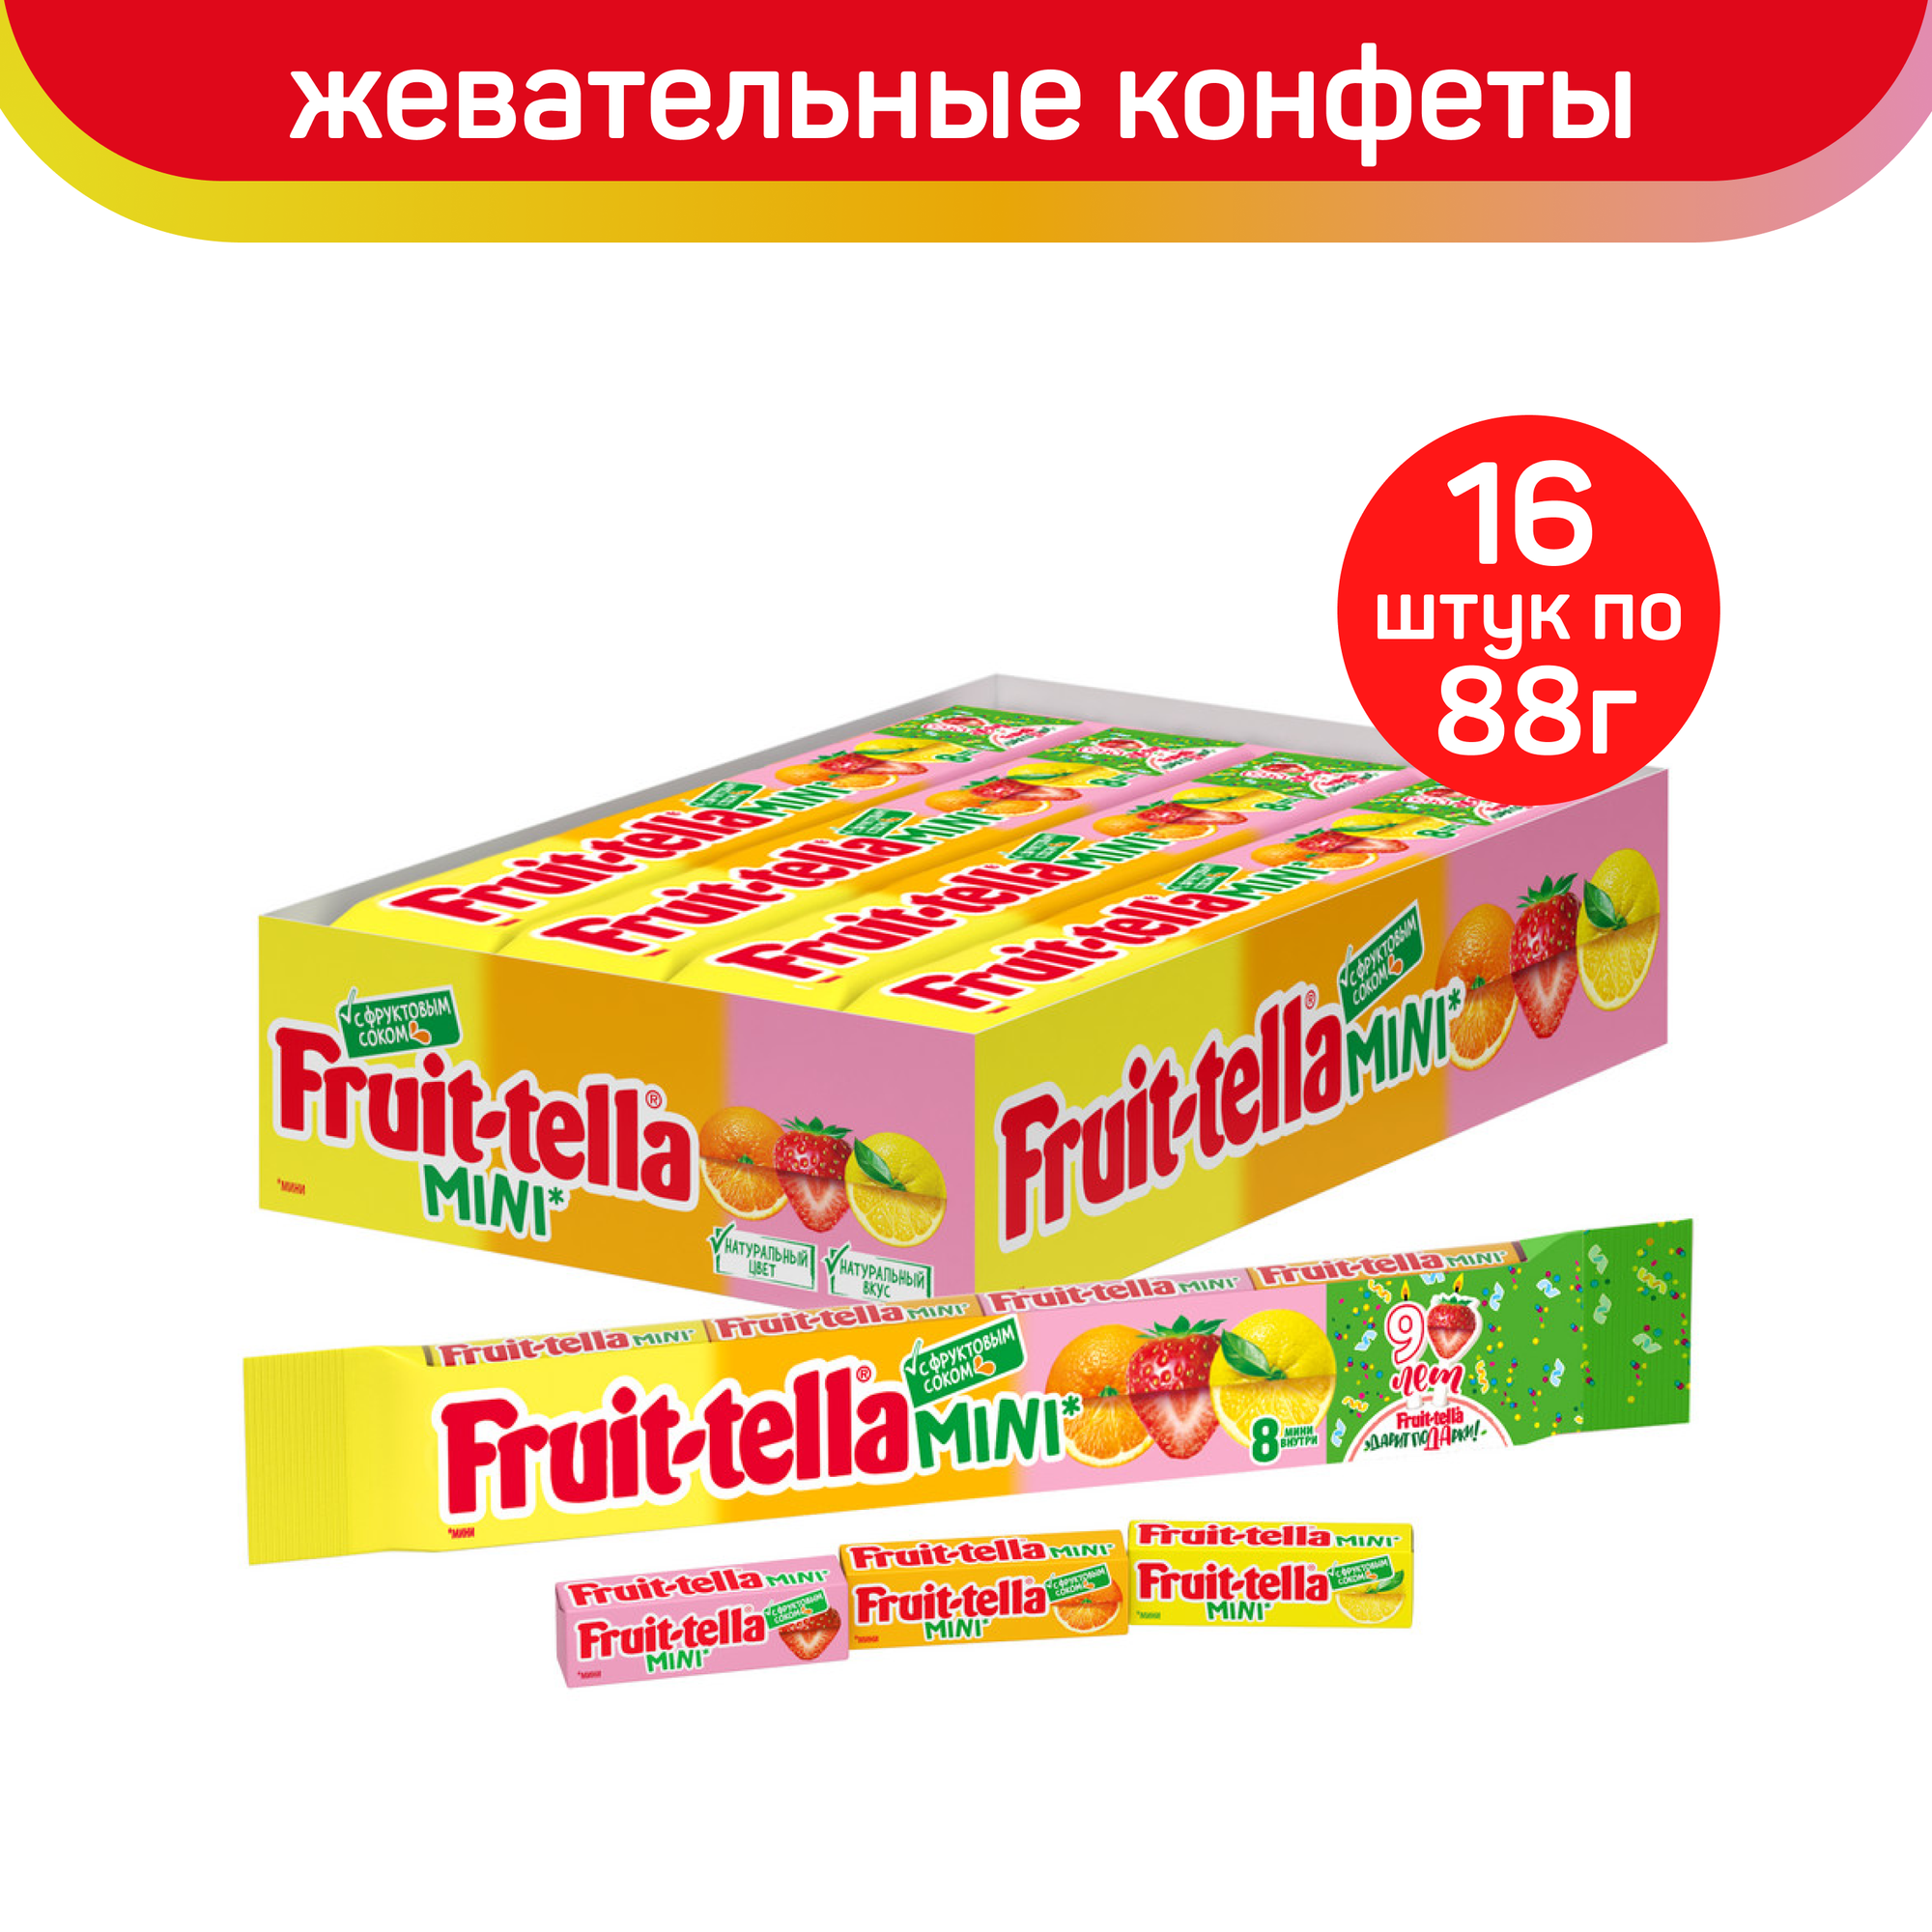 Конфеты Fruittella мини, 16шт. по 88г.